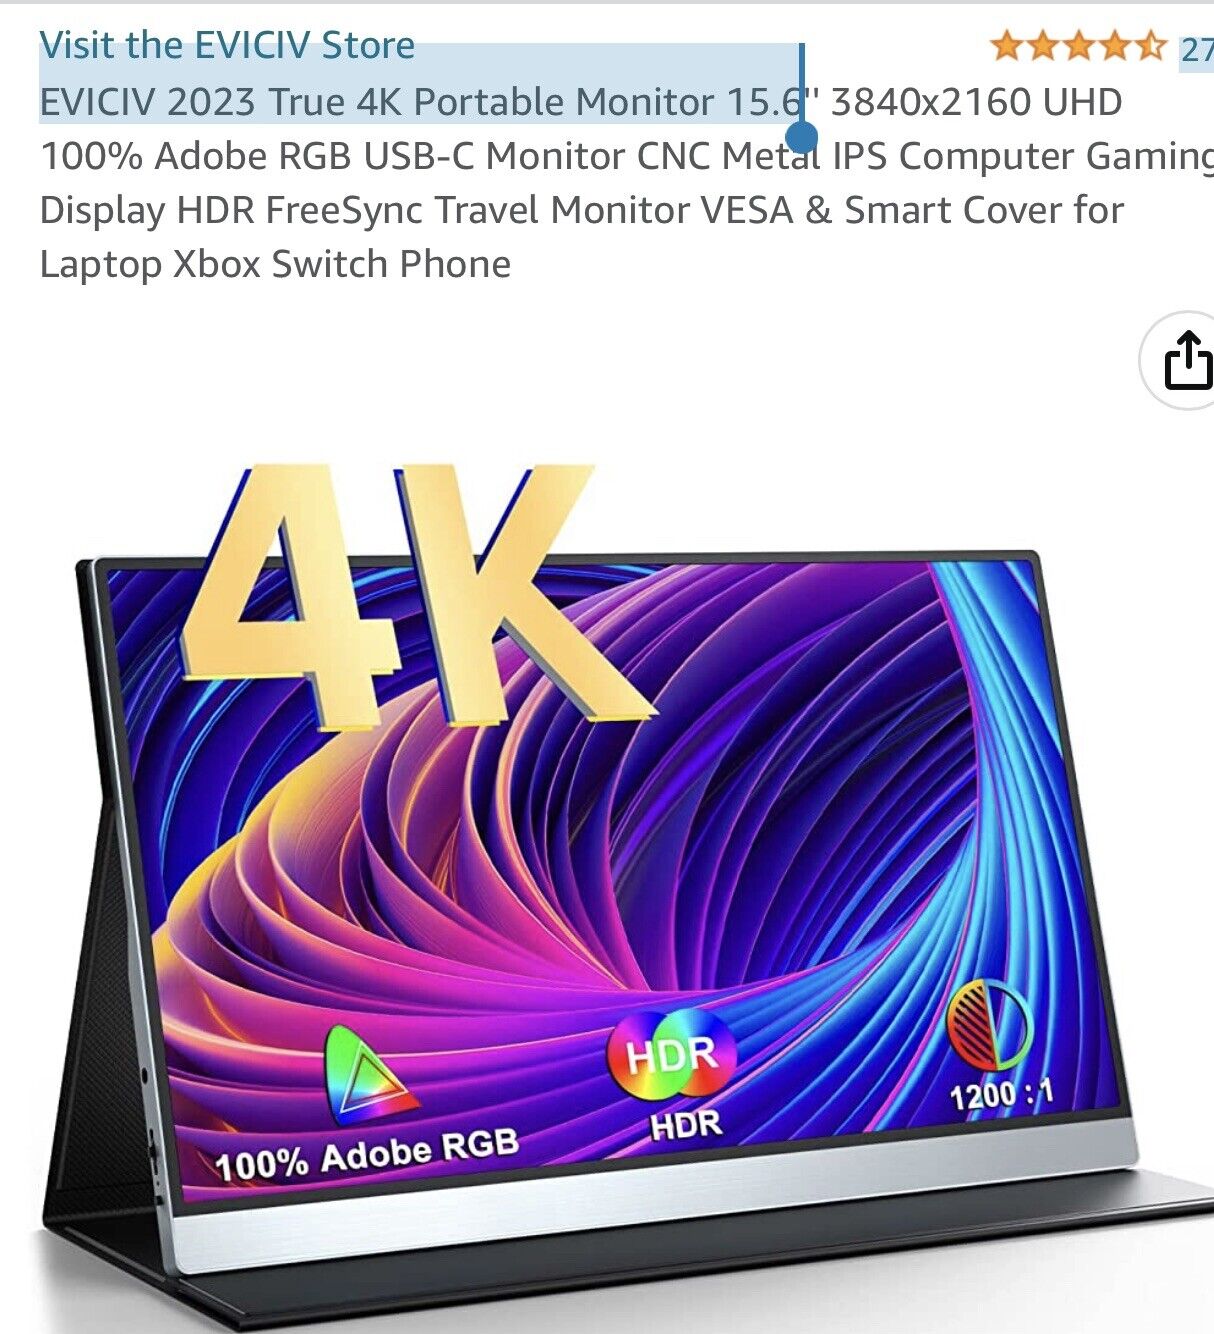 EVICIV 2023 True 4K Portable Monitor 15.6”